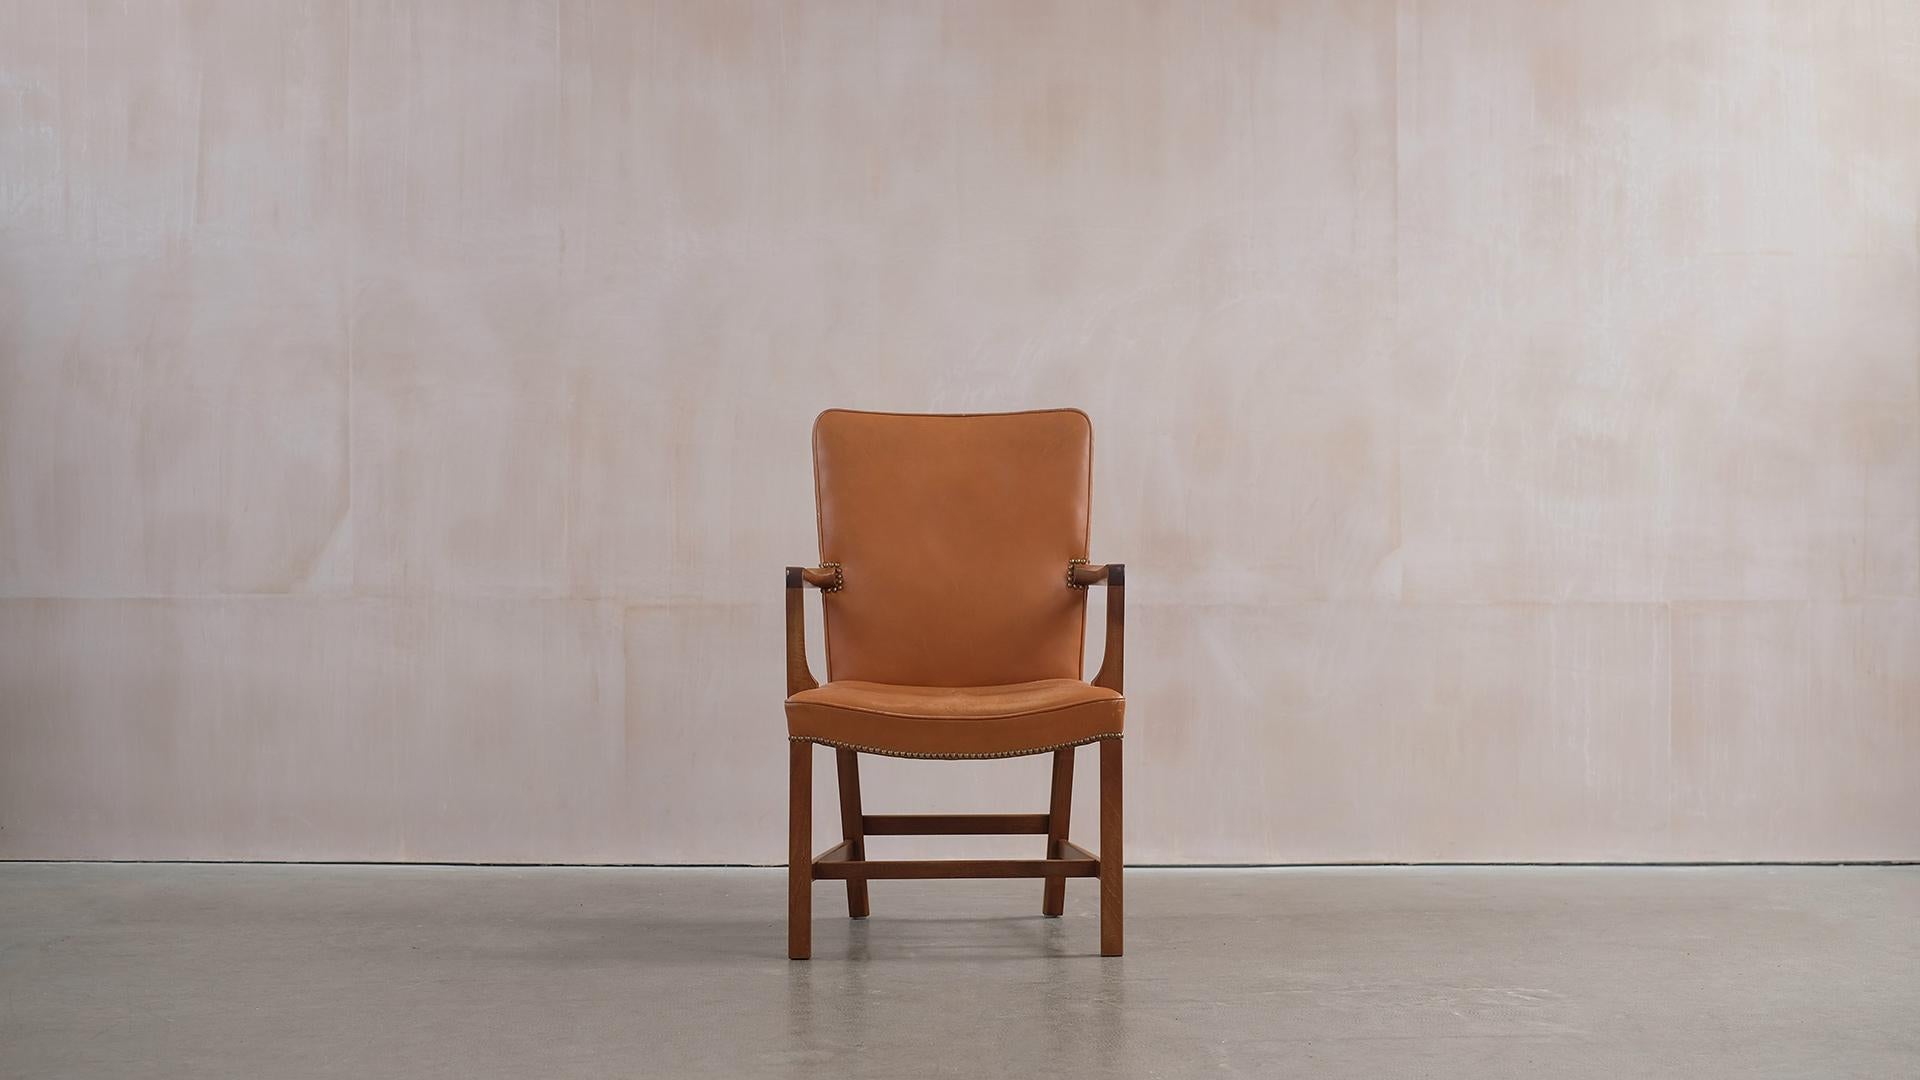 Wunderschöner Norrevold-Sessel, entworfen von Kaare Klint im Jahr 1939 für den Tischlermeister Rud Rasmussen, Kopenhagen. Dieses Exemplar in schönem Mahagoni und hellbraunem, patiniertem Leder. Superbequemer und eleganter klassischer Stuhl.  
